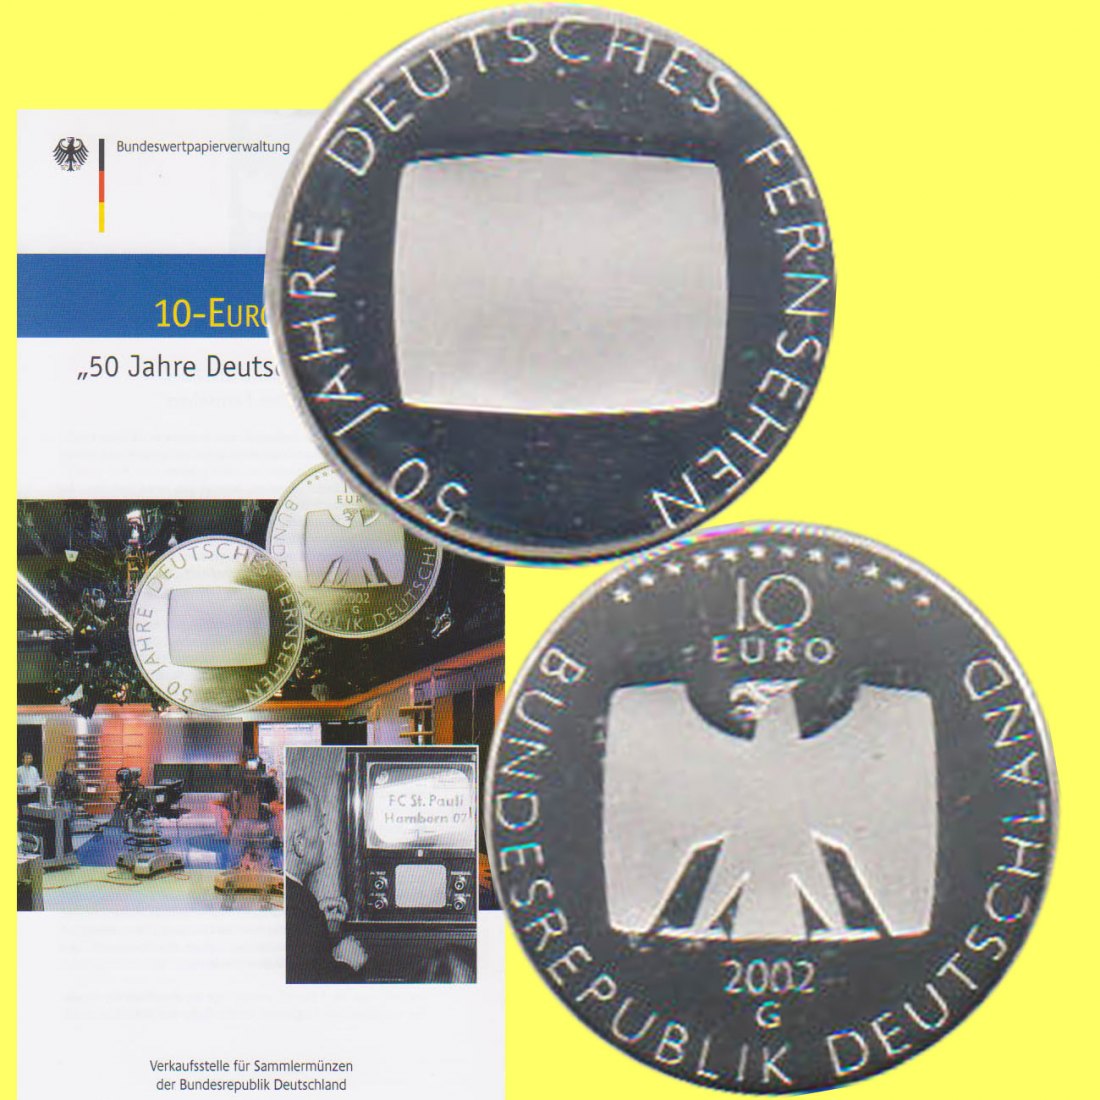  Offiz. 10-Euro-Silbermünze BRD *50 Jahre Deutsches Fernsehen* 2002 *PP*   